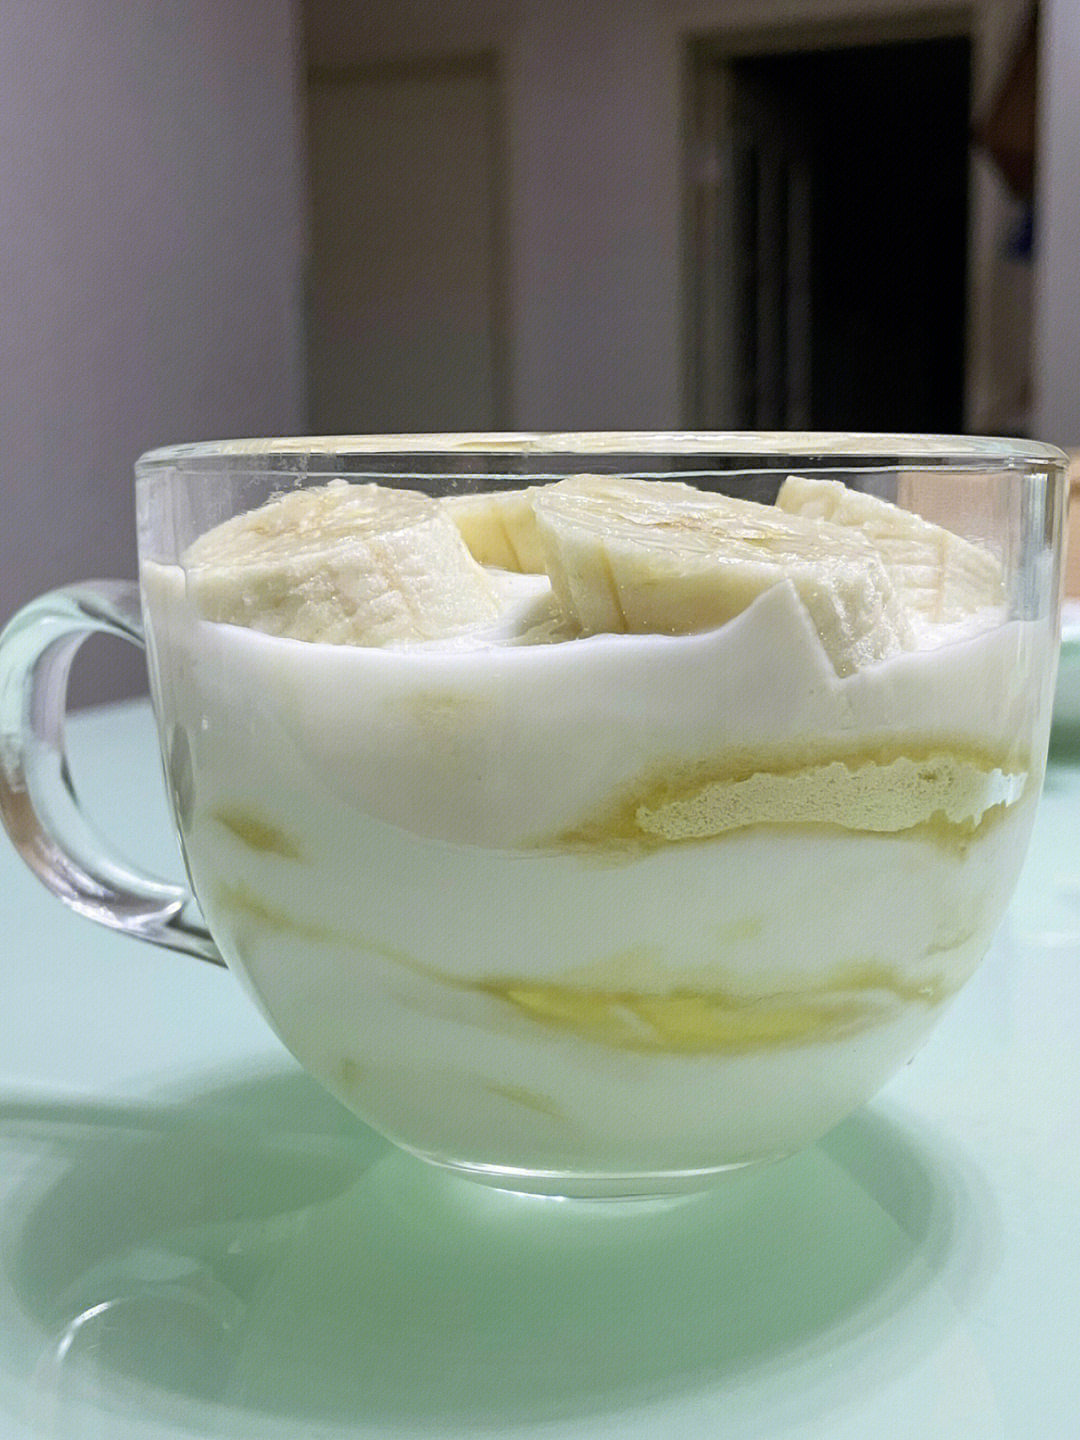 香蕉切小片一层酸奶77一层豆浆粉77一层香蕉94这不就是简易版的